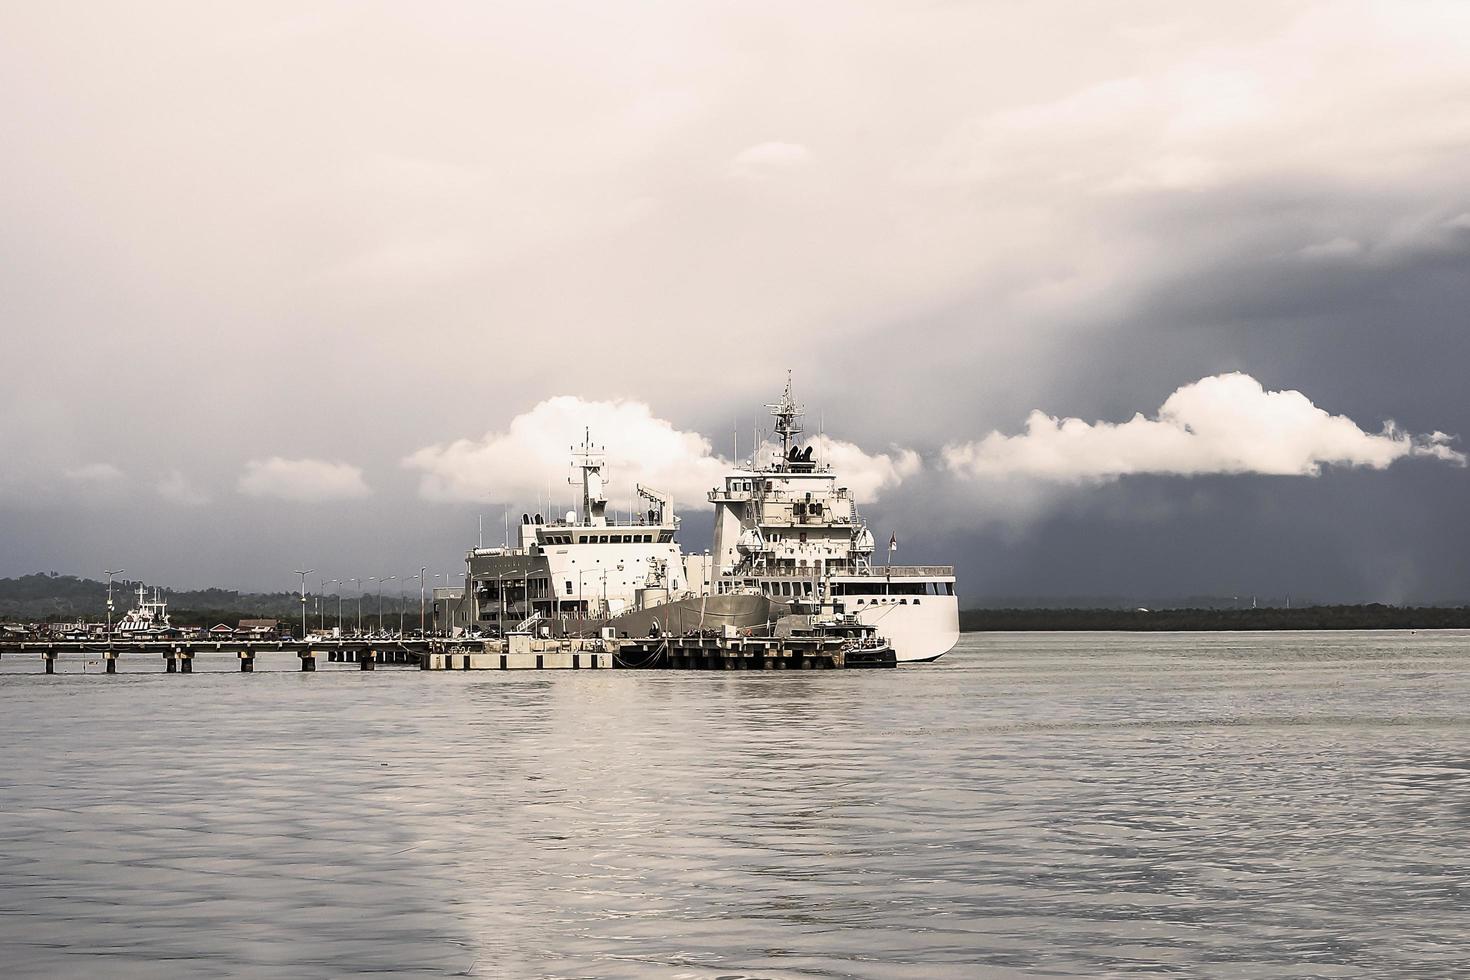 krigsfartygsplats vid marinbryggan foto